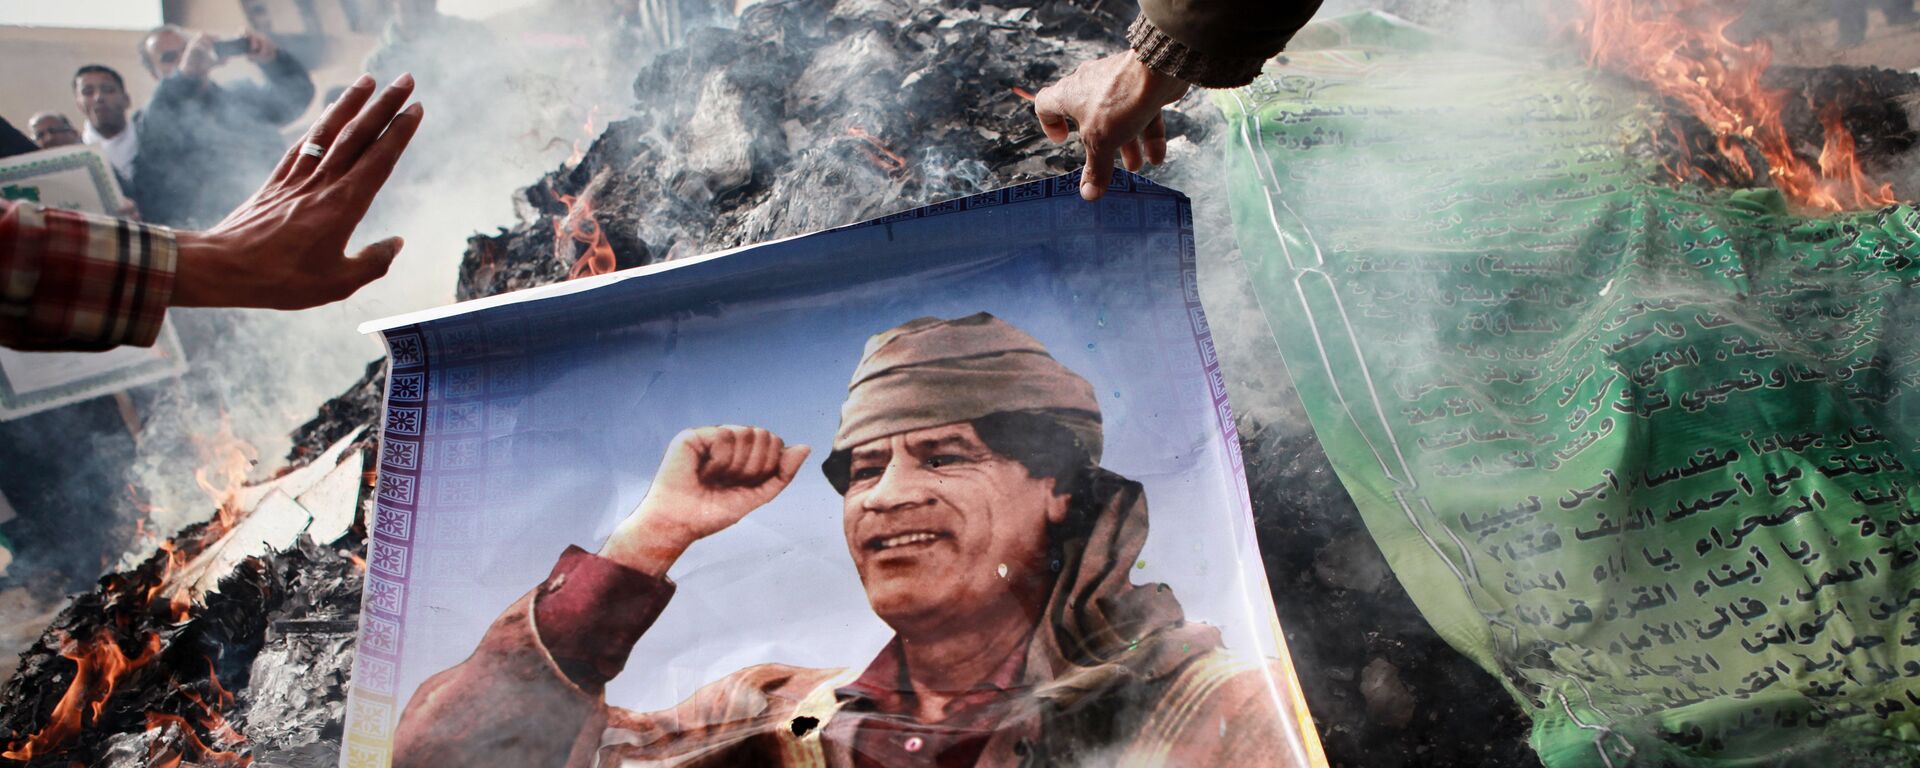 Жители Бенгази сжигают портреты Муамара Каддафи, плакаты с его цитатами и Зеленую книгу Каддафи, 2011 год - Sputnik Грузия, 1920, 04.02.2019